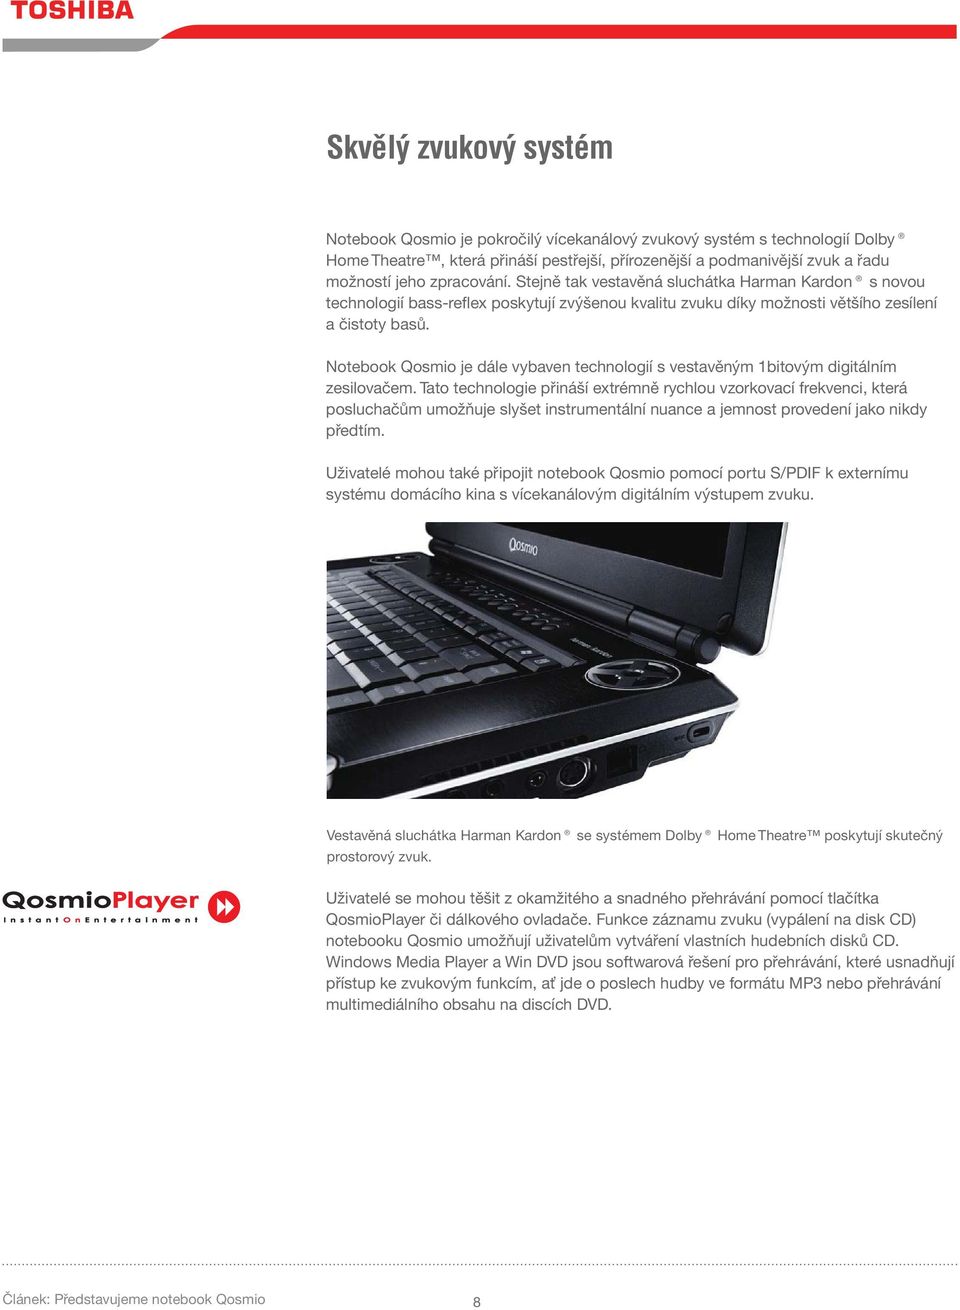 Notebook Qosmio je dále vybaven technologií s vestavěným 1bitovým digitálním zesilovačem.